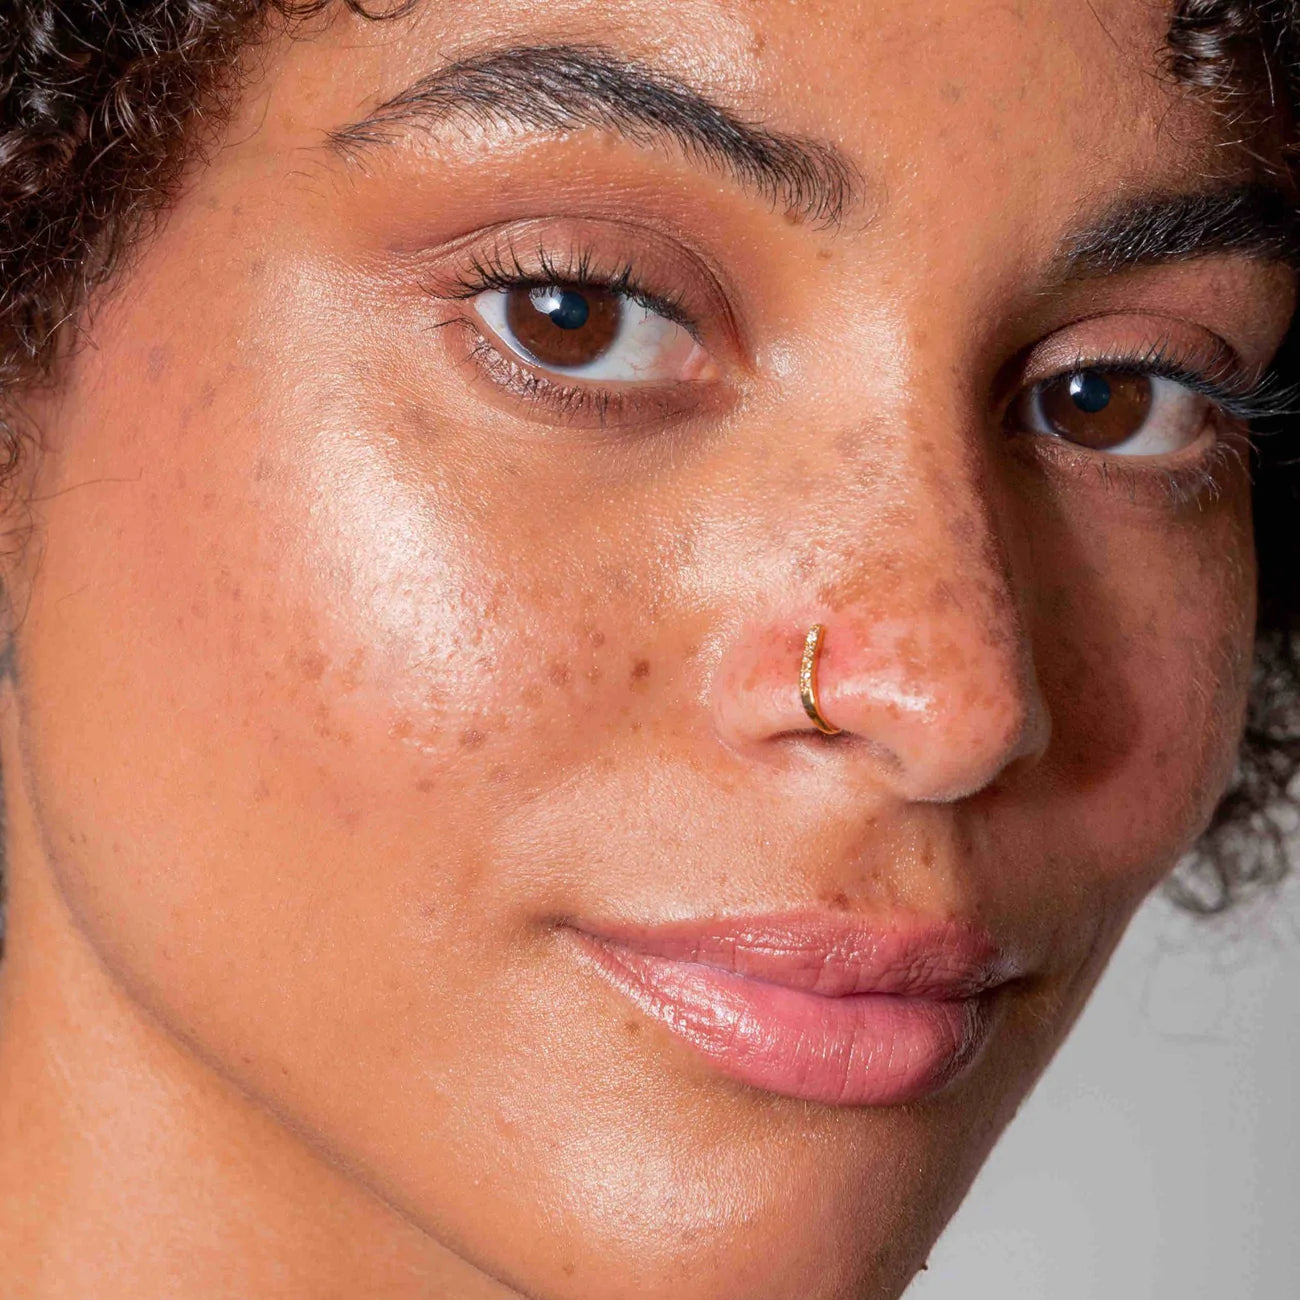 PACK DÉCOUVERTE : 4 faux piercings au nez